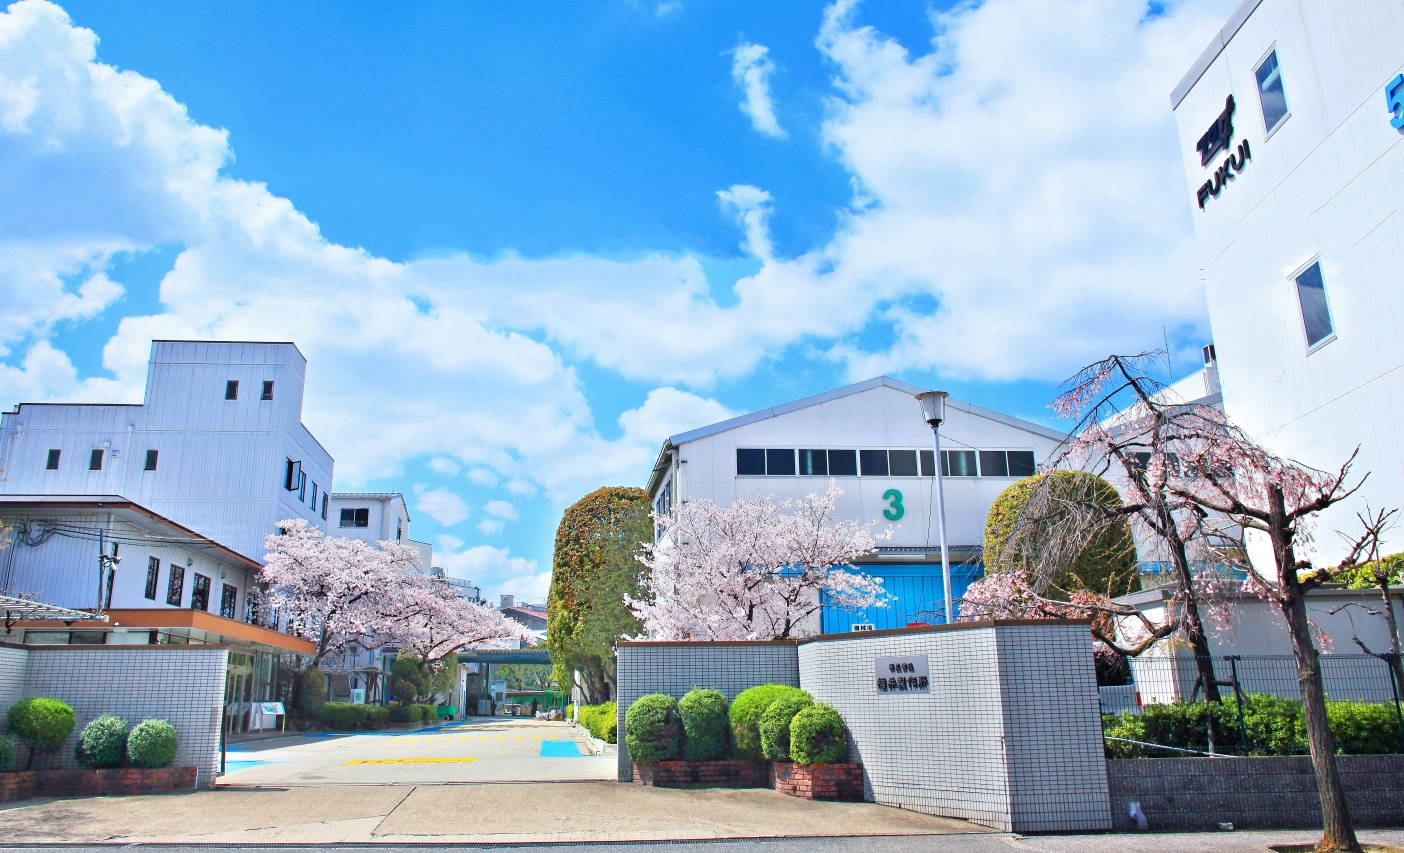 Photo 1. The company's facilities in Hirakata. 